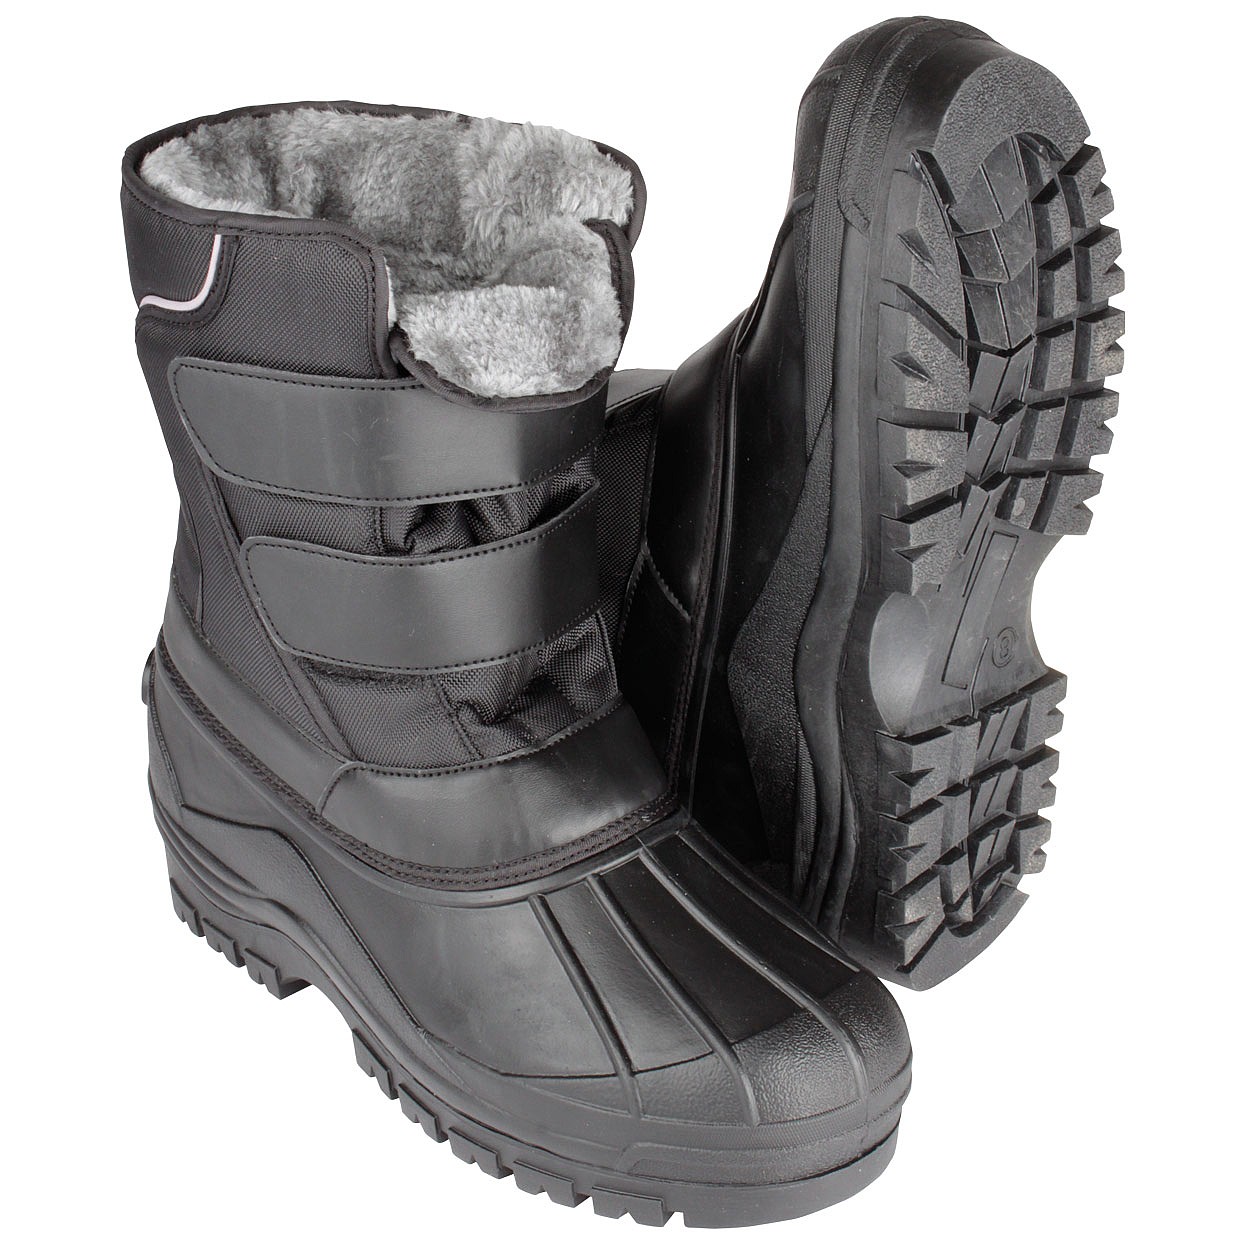 Buy > waterproof black boots men > in stock